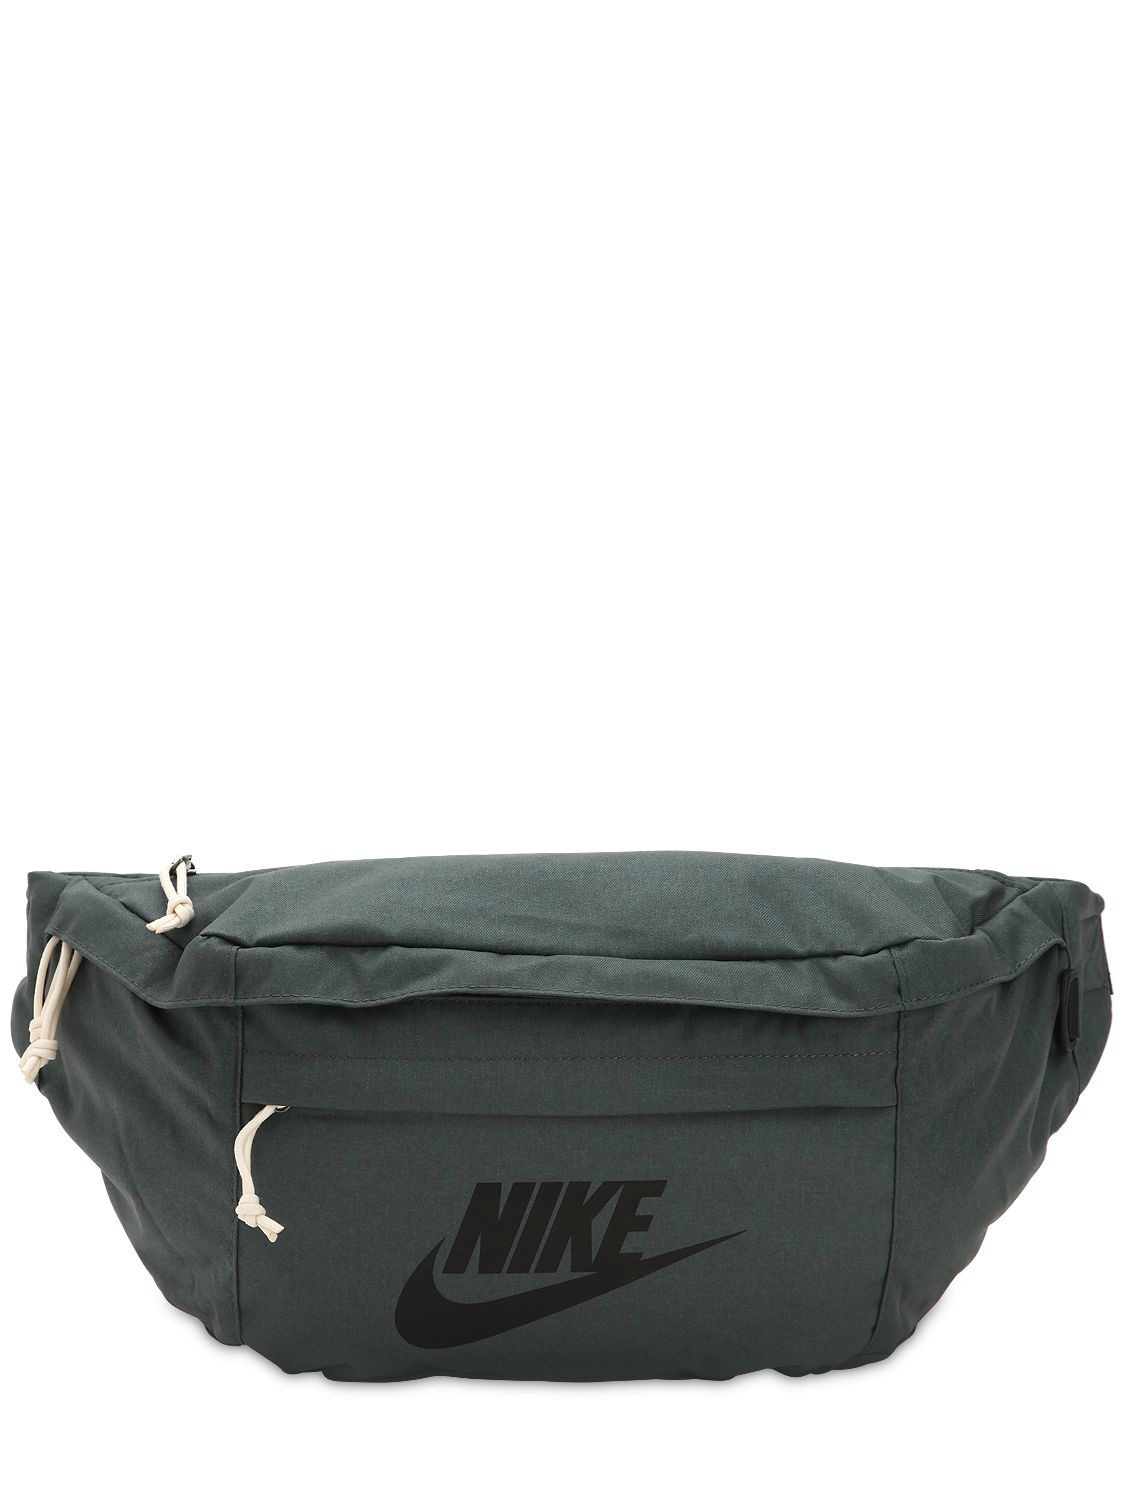 Nike Tech Belt Bag In Silver